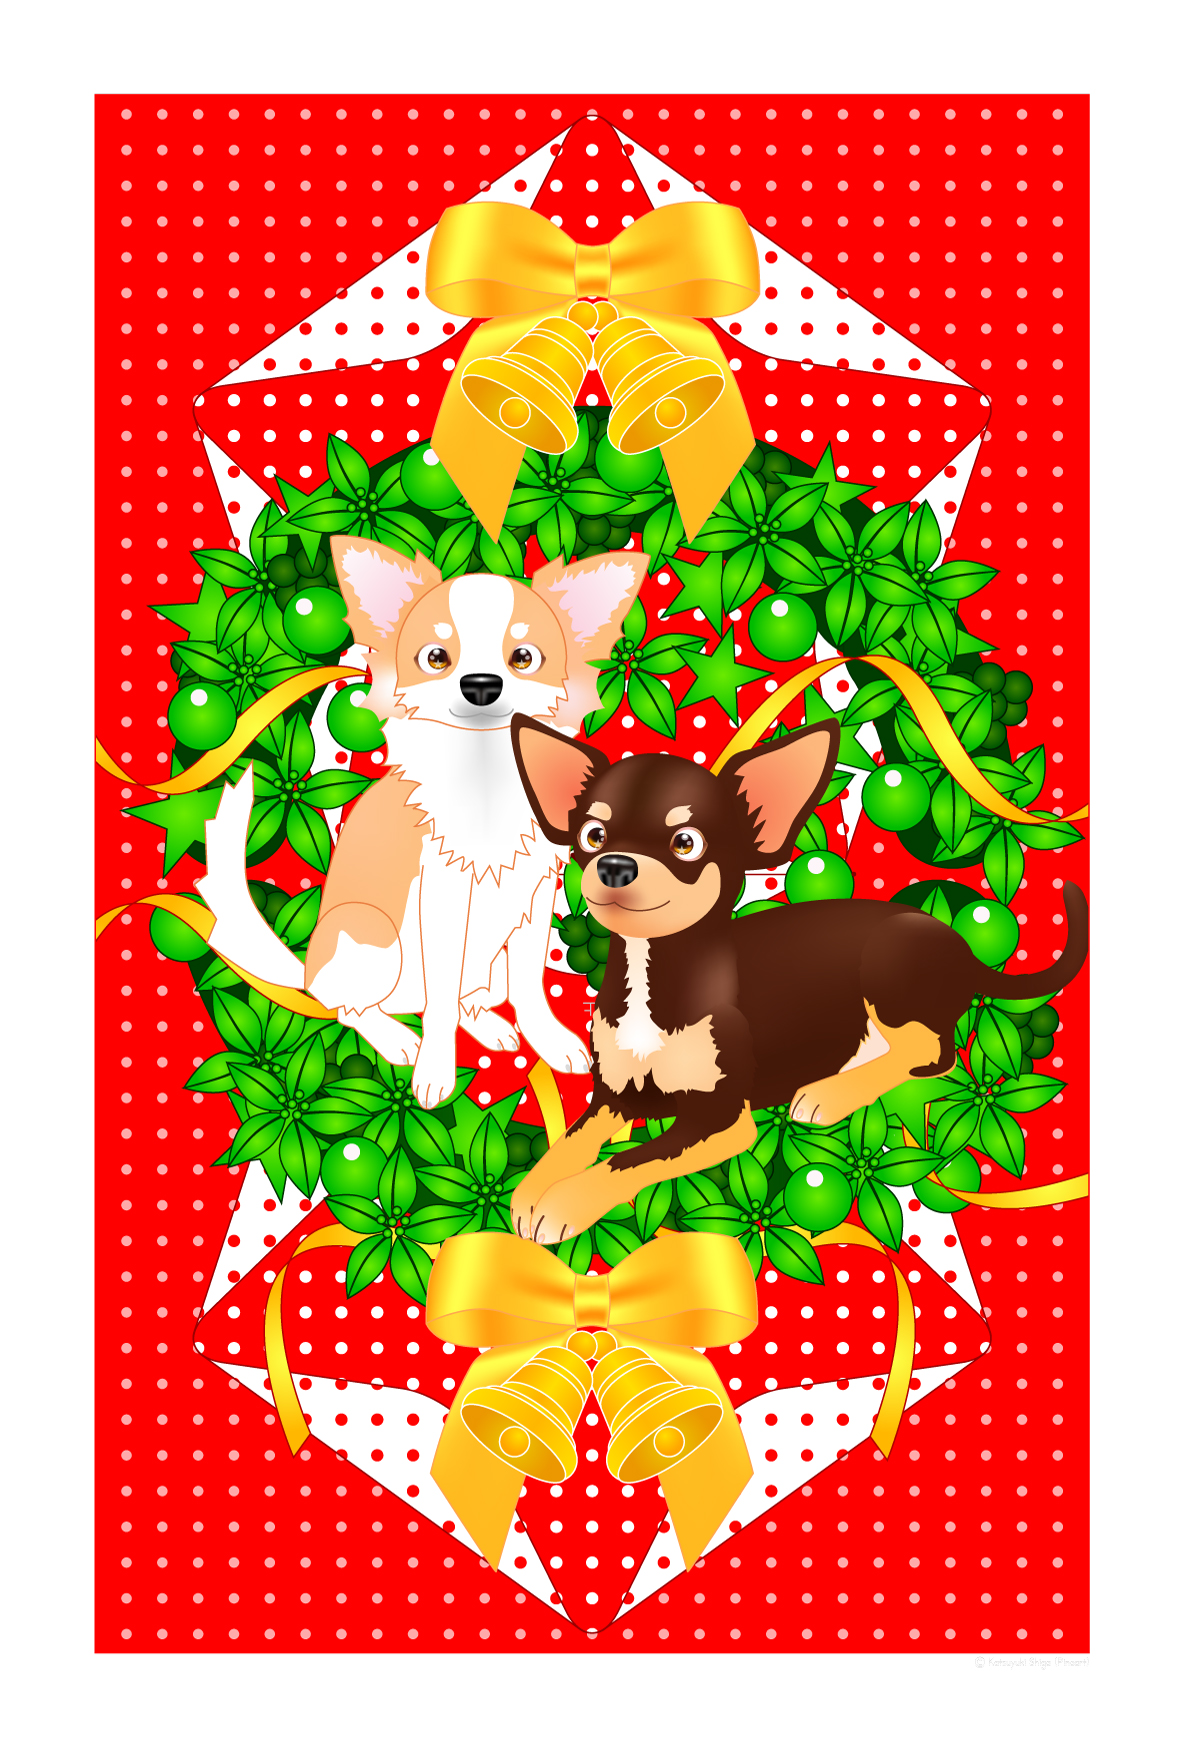 クリスマスのノベルティグッズ ポストカード無料テンプレート03 クリスマス飾り付けのアイテムdiy クリスマスカード ペーパークラフト ブログ From ぴのアート